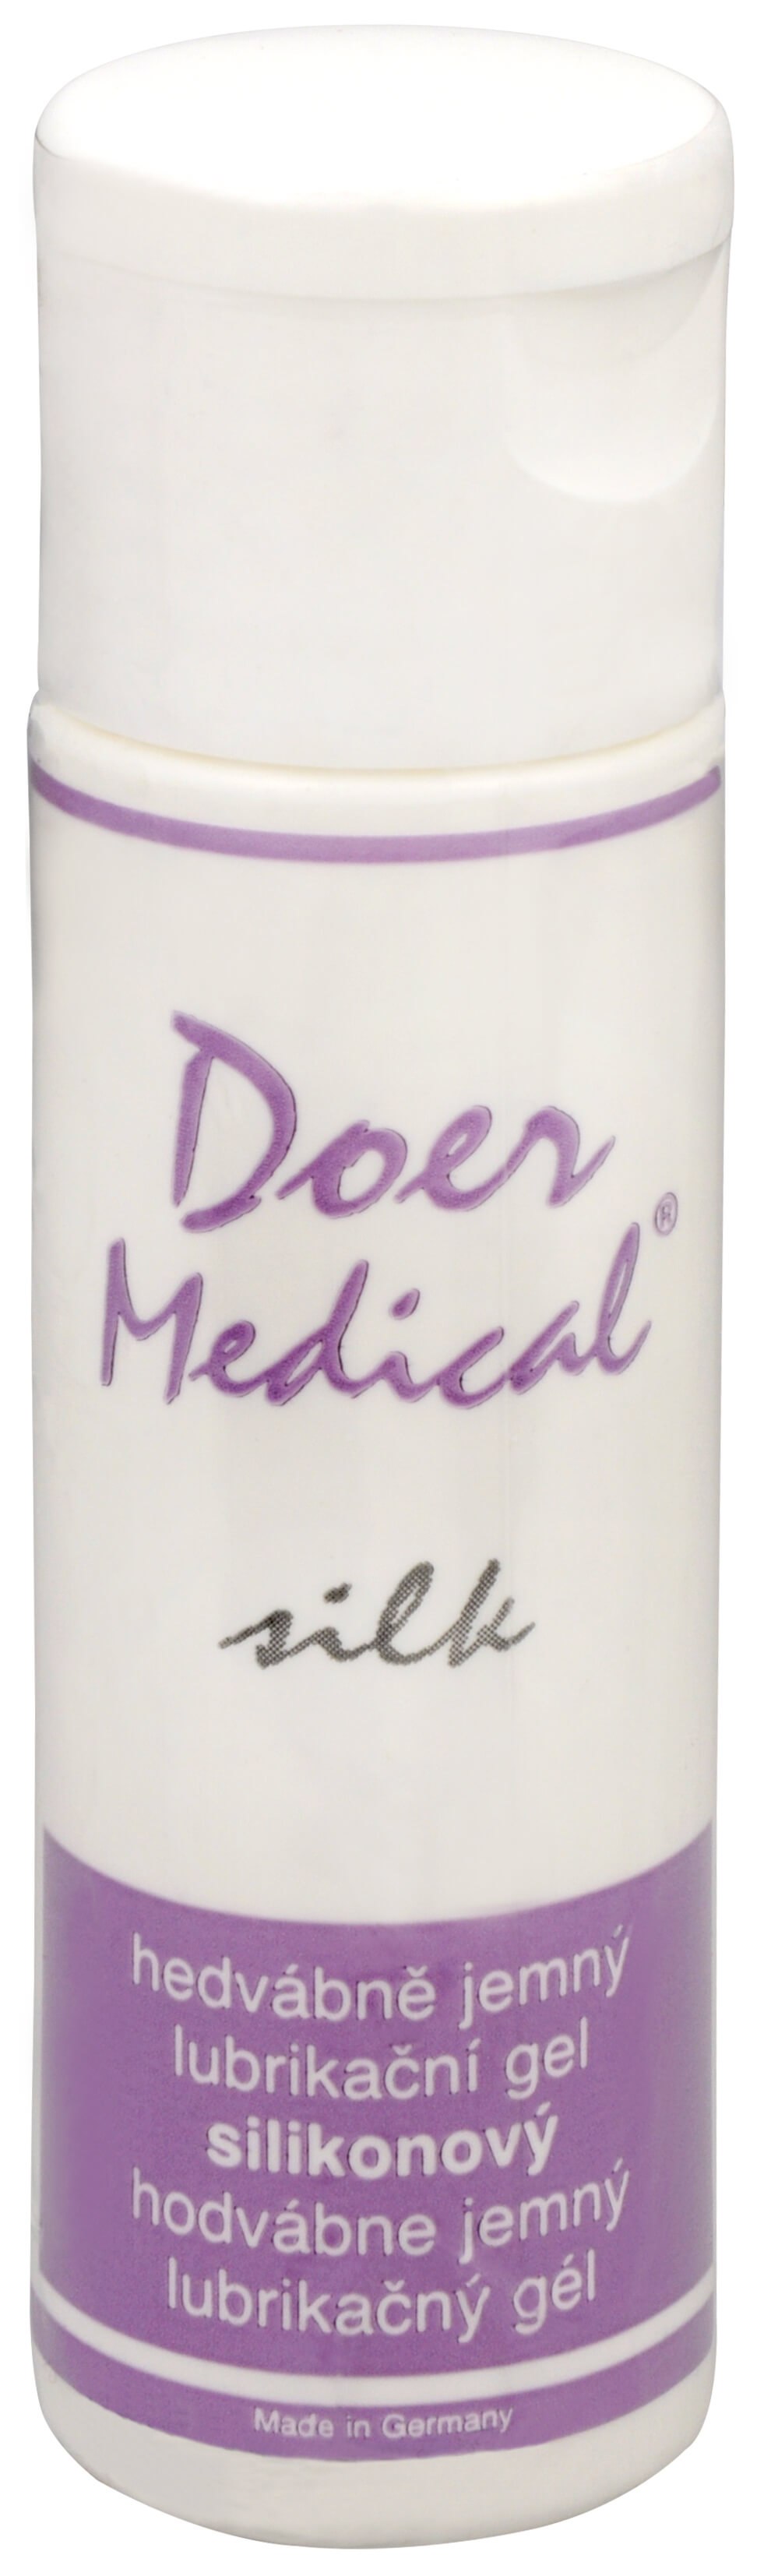 Zobrazit detail výrobku Doer Medical® Doer Medical Silk 30 ml + 2 měsíce na vrácení zboží